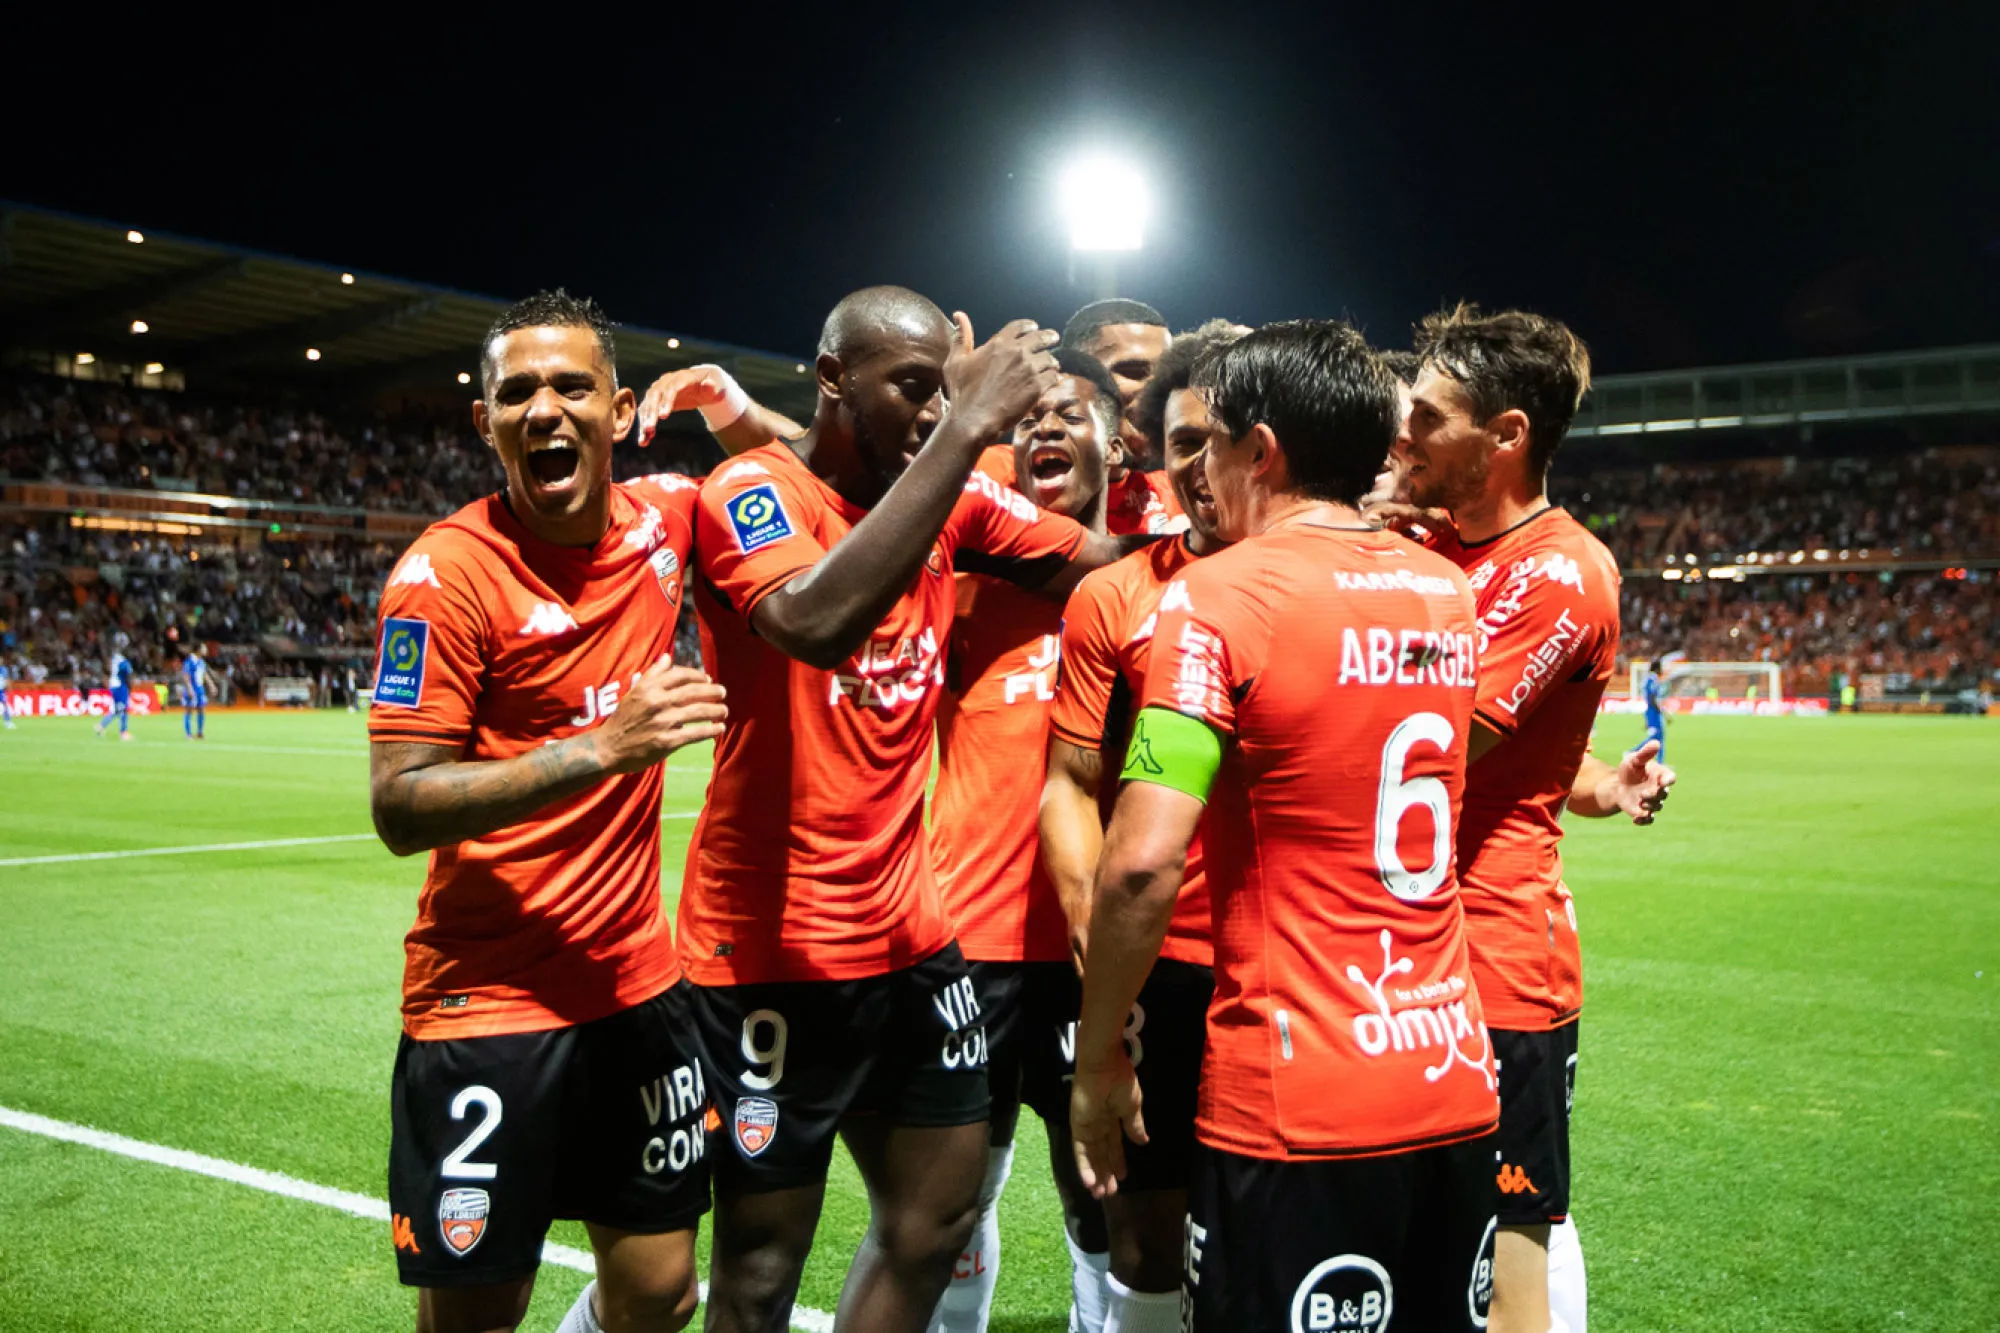 Pronostic Lorient Montpellier : analyse, cotes et prono du match de Ligue 1